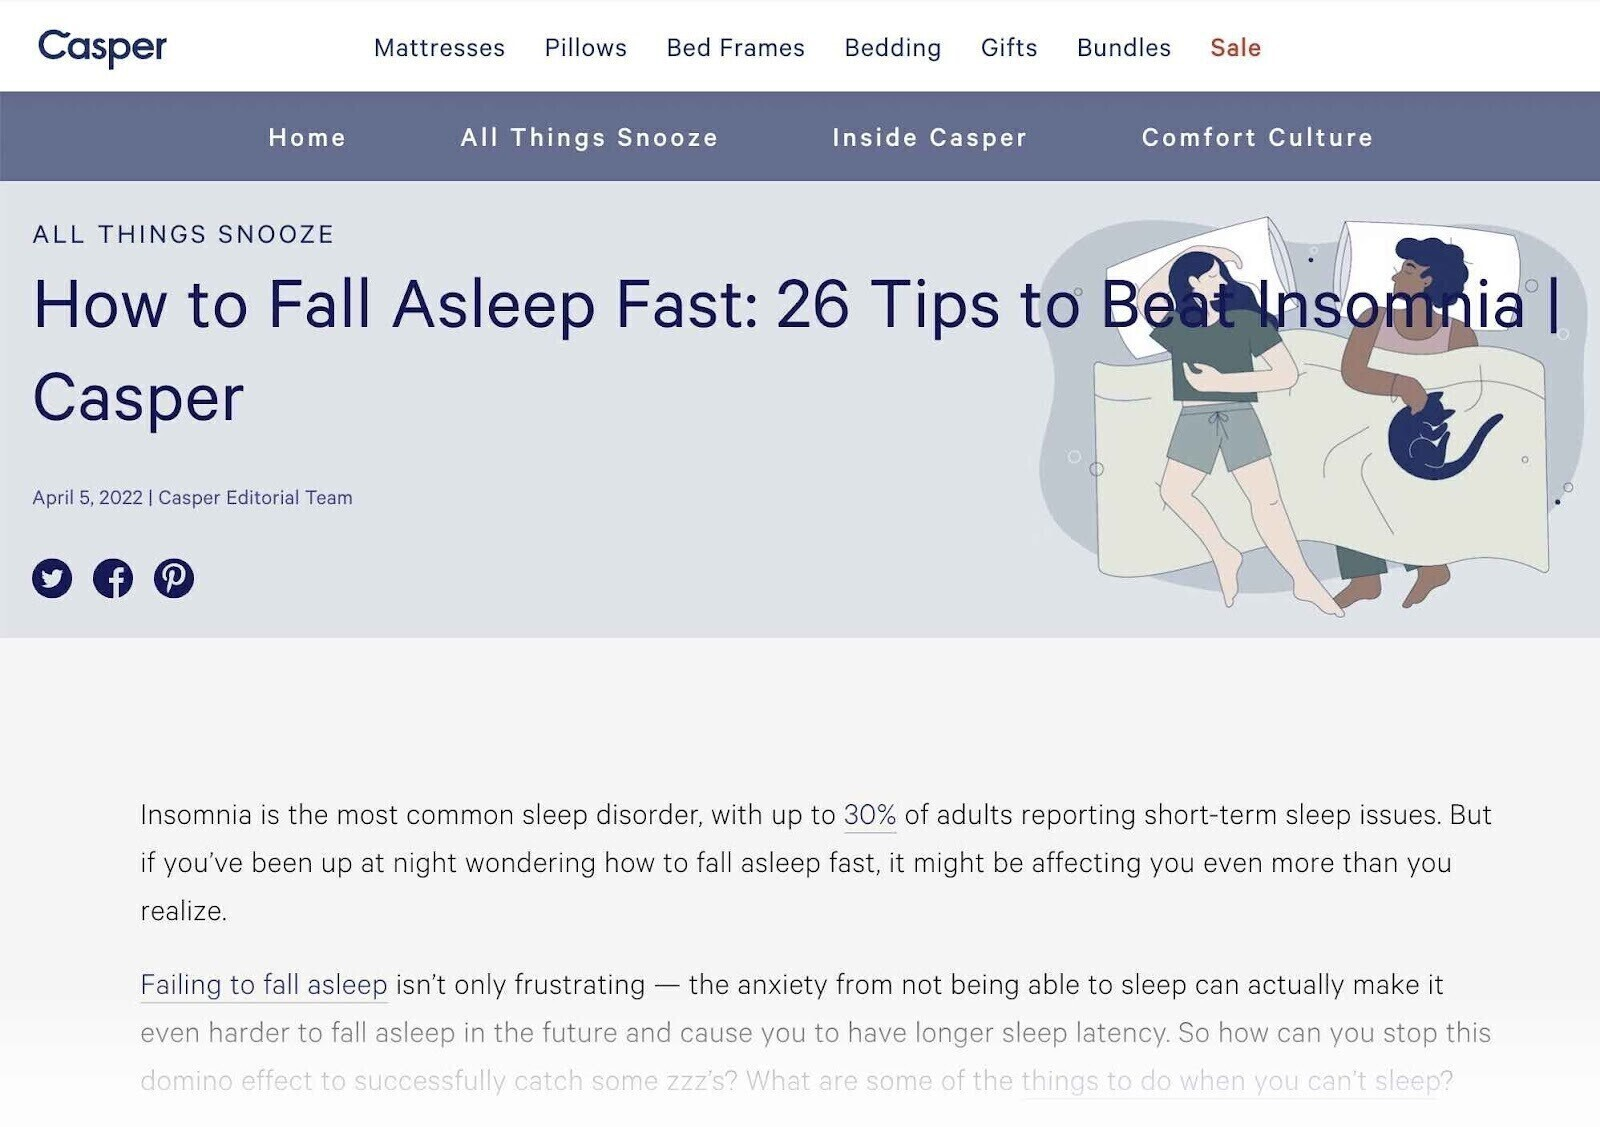 a blog post about how to fall asleep fast by mattress brand Casper